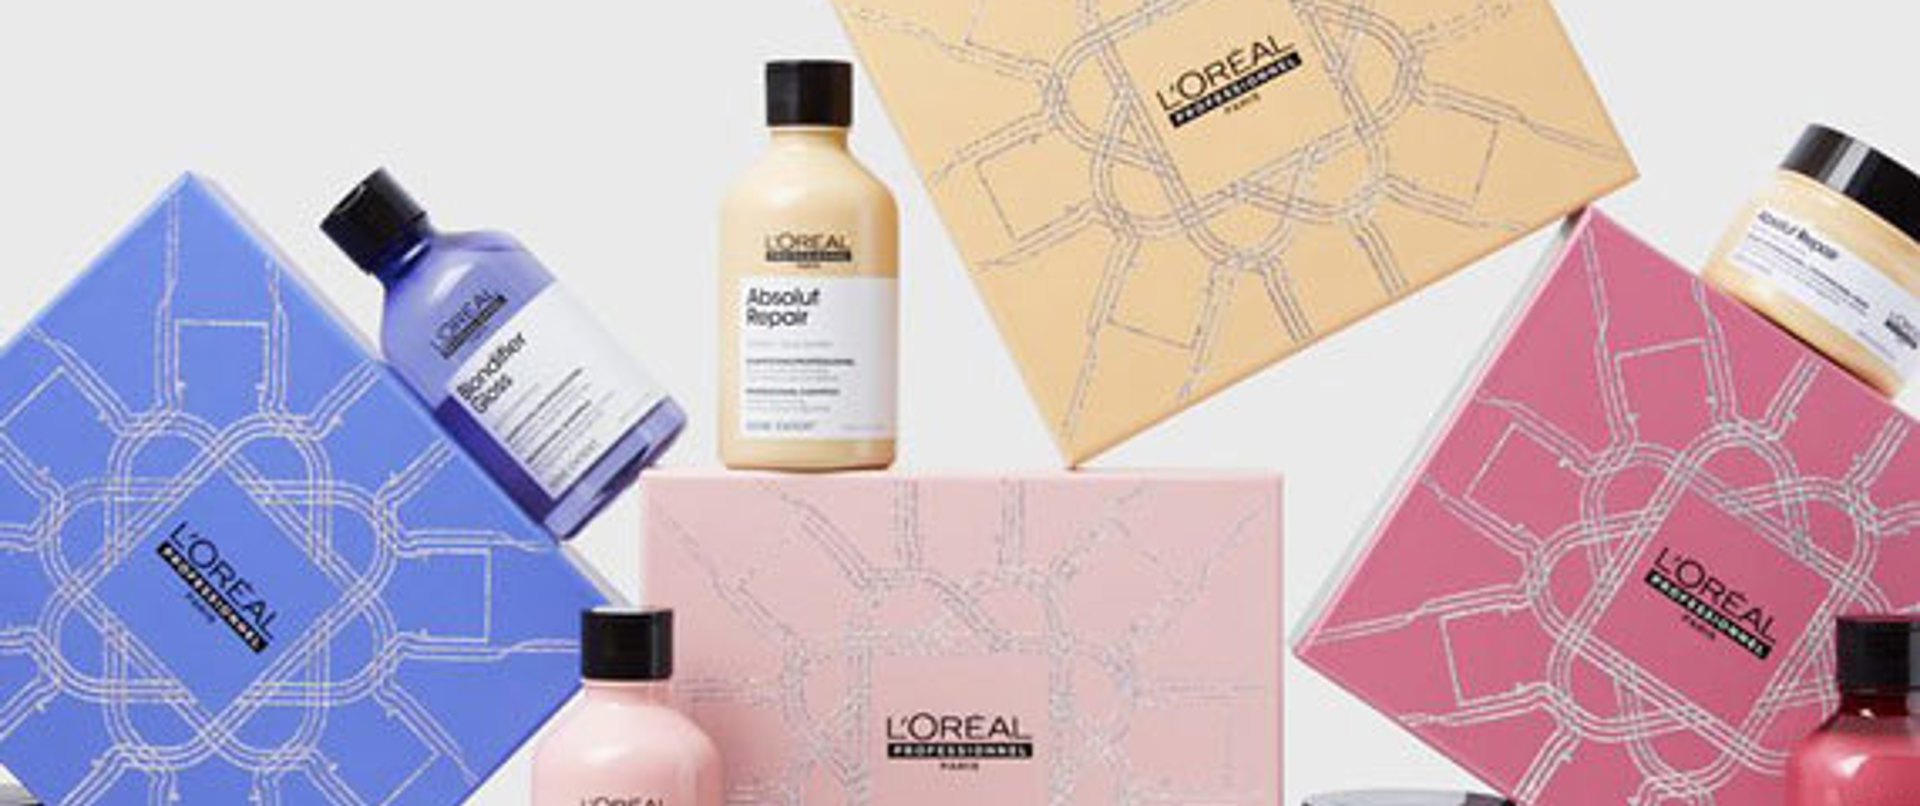 L'Oréal Professionnel'in deneyip en sevdiğimiz 8 ürünü!